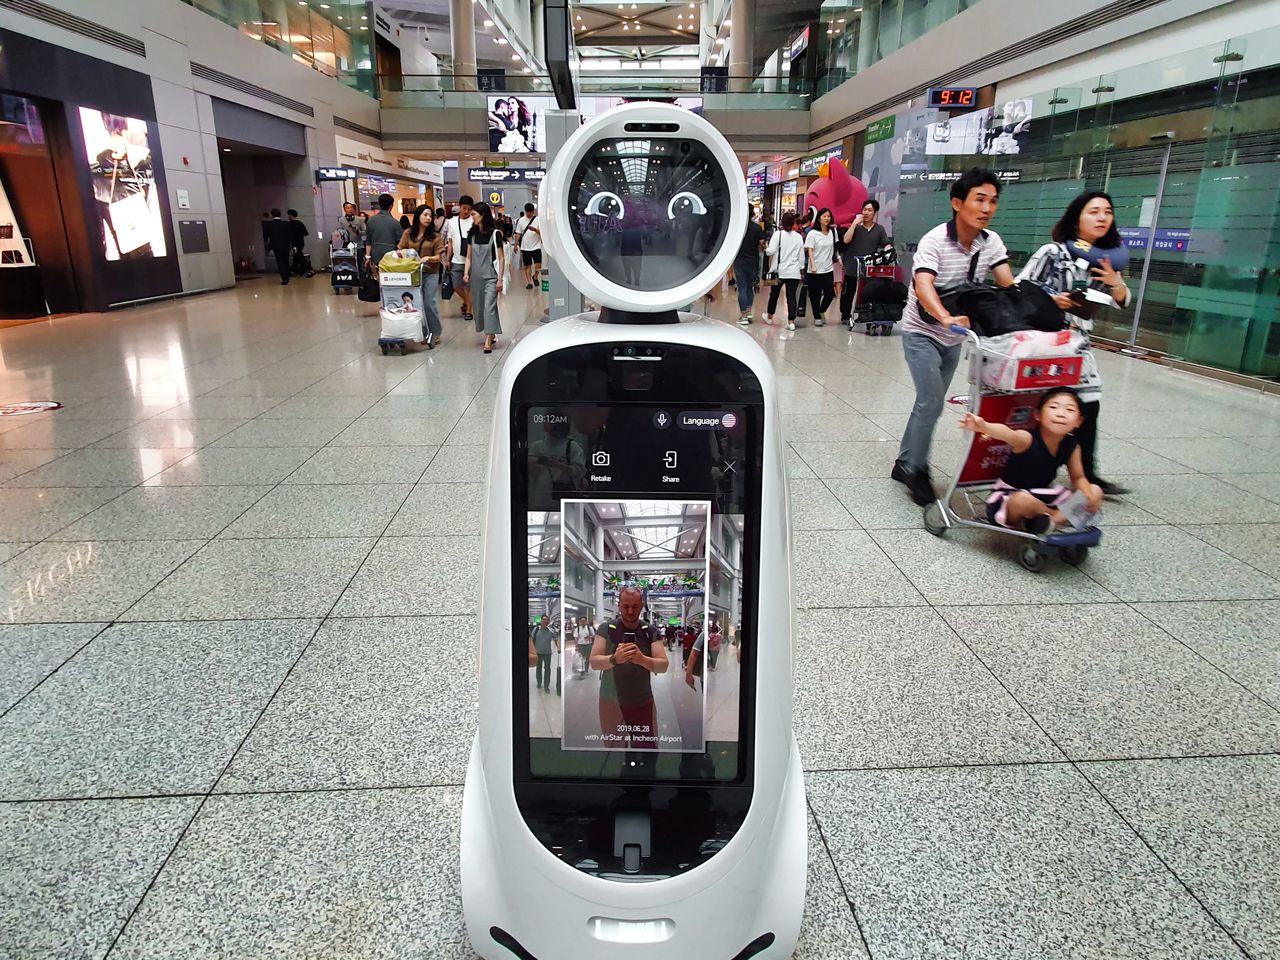 Na lotnisku wita cię robot, ale sygnalizację świetlną zastępują ludzie. Korea Południowa to kraj pełen sprzeczności - Lotnisko w Seulu opanowały przyjazne roboty